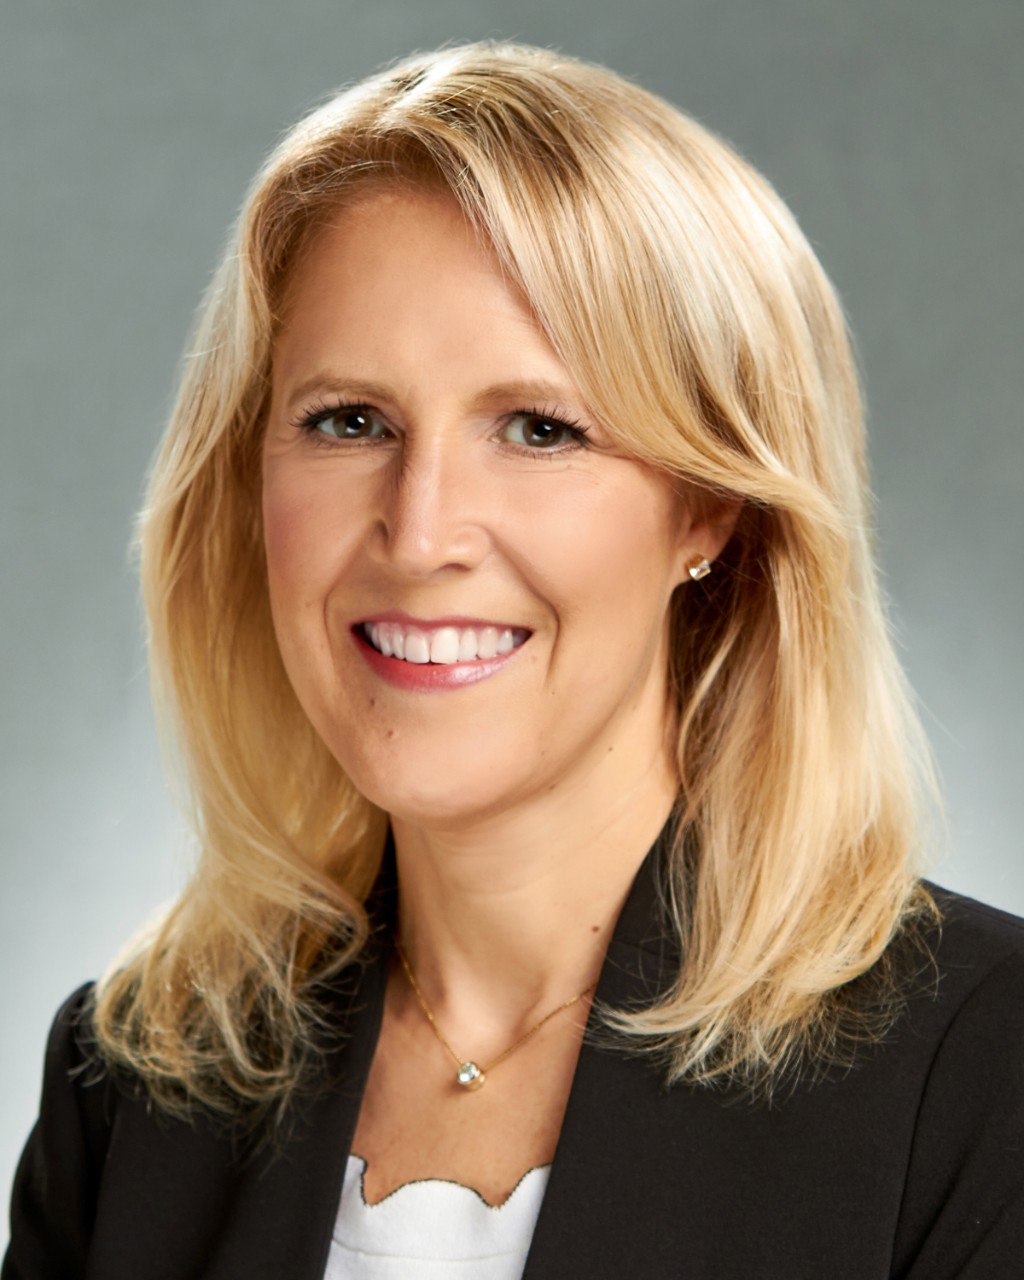 GM Appoints Kristen Siemen to Lead Sustainability Strategy